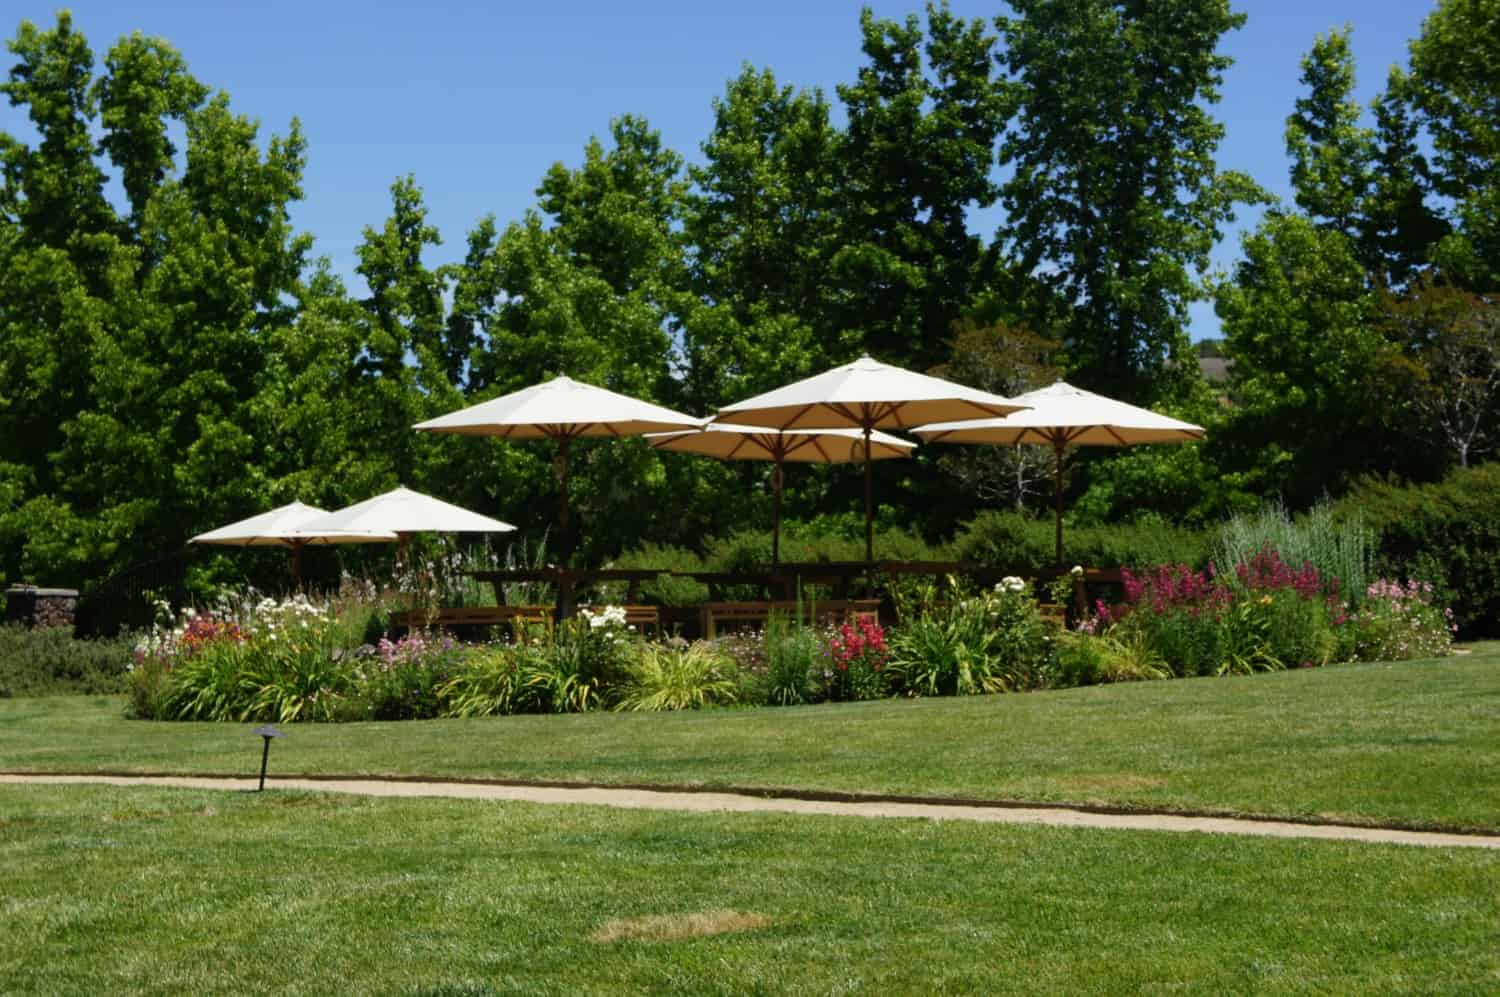 Dog Friendly Wineries à Sonoma - patio extérieur entouré de plantes à fleurs avec parasols pour l'ombre